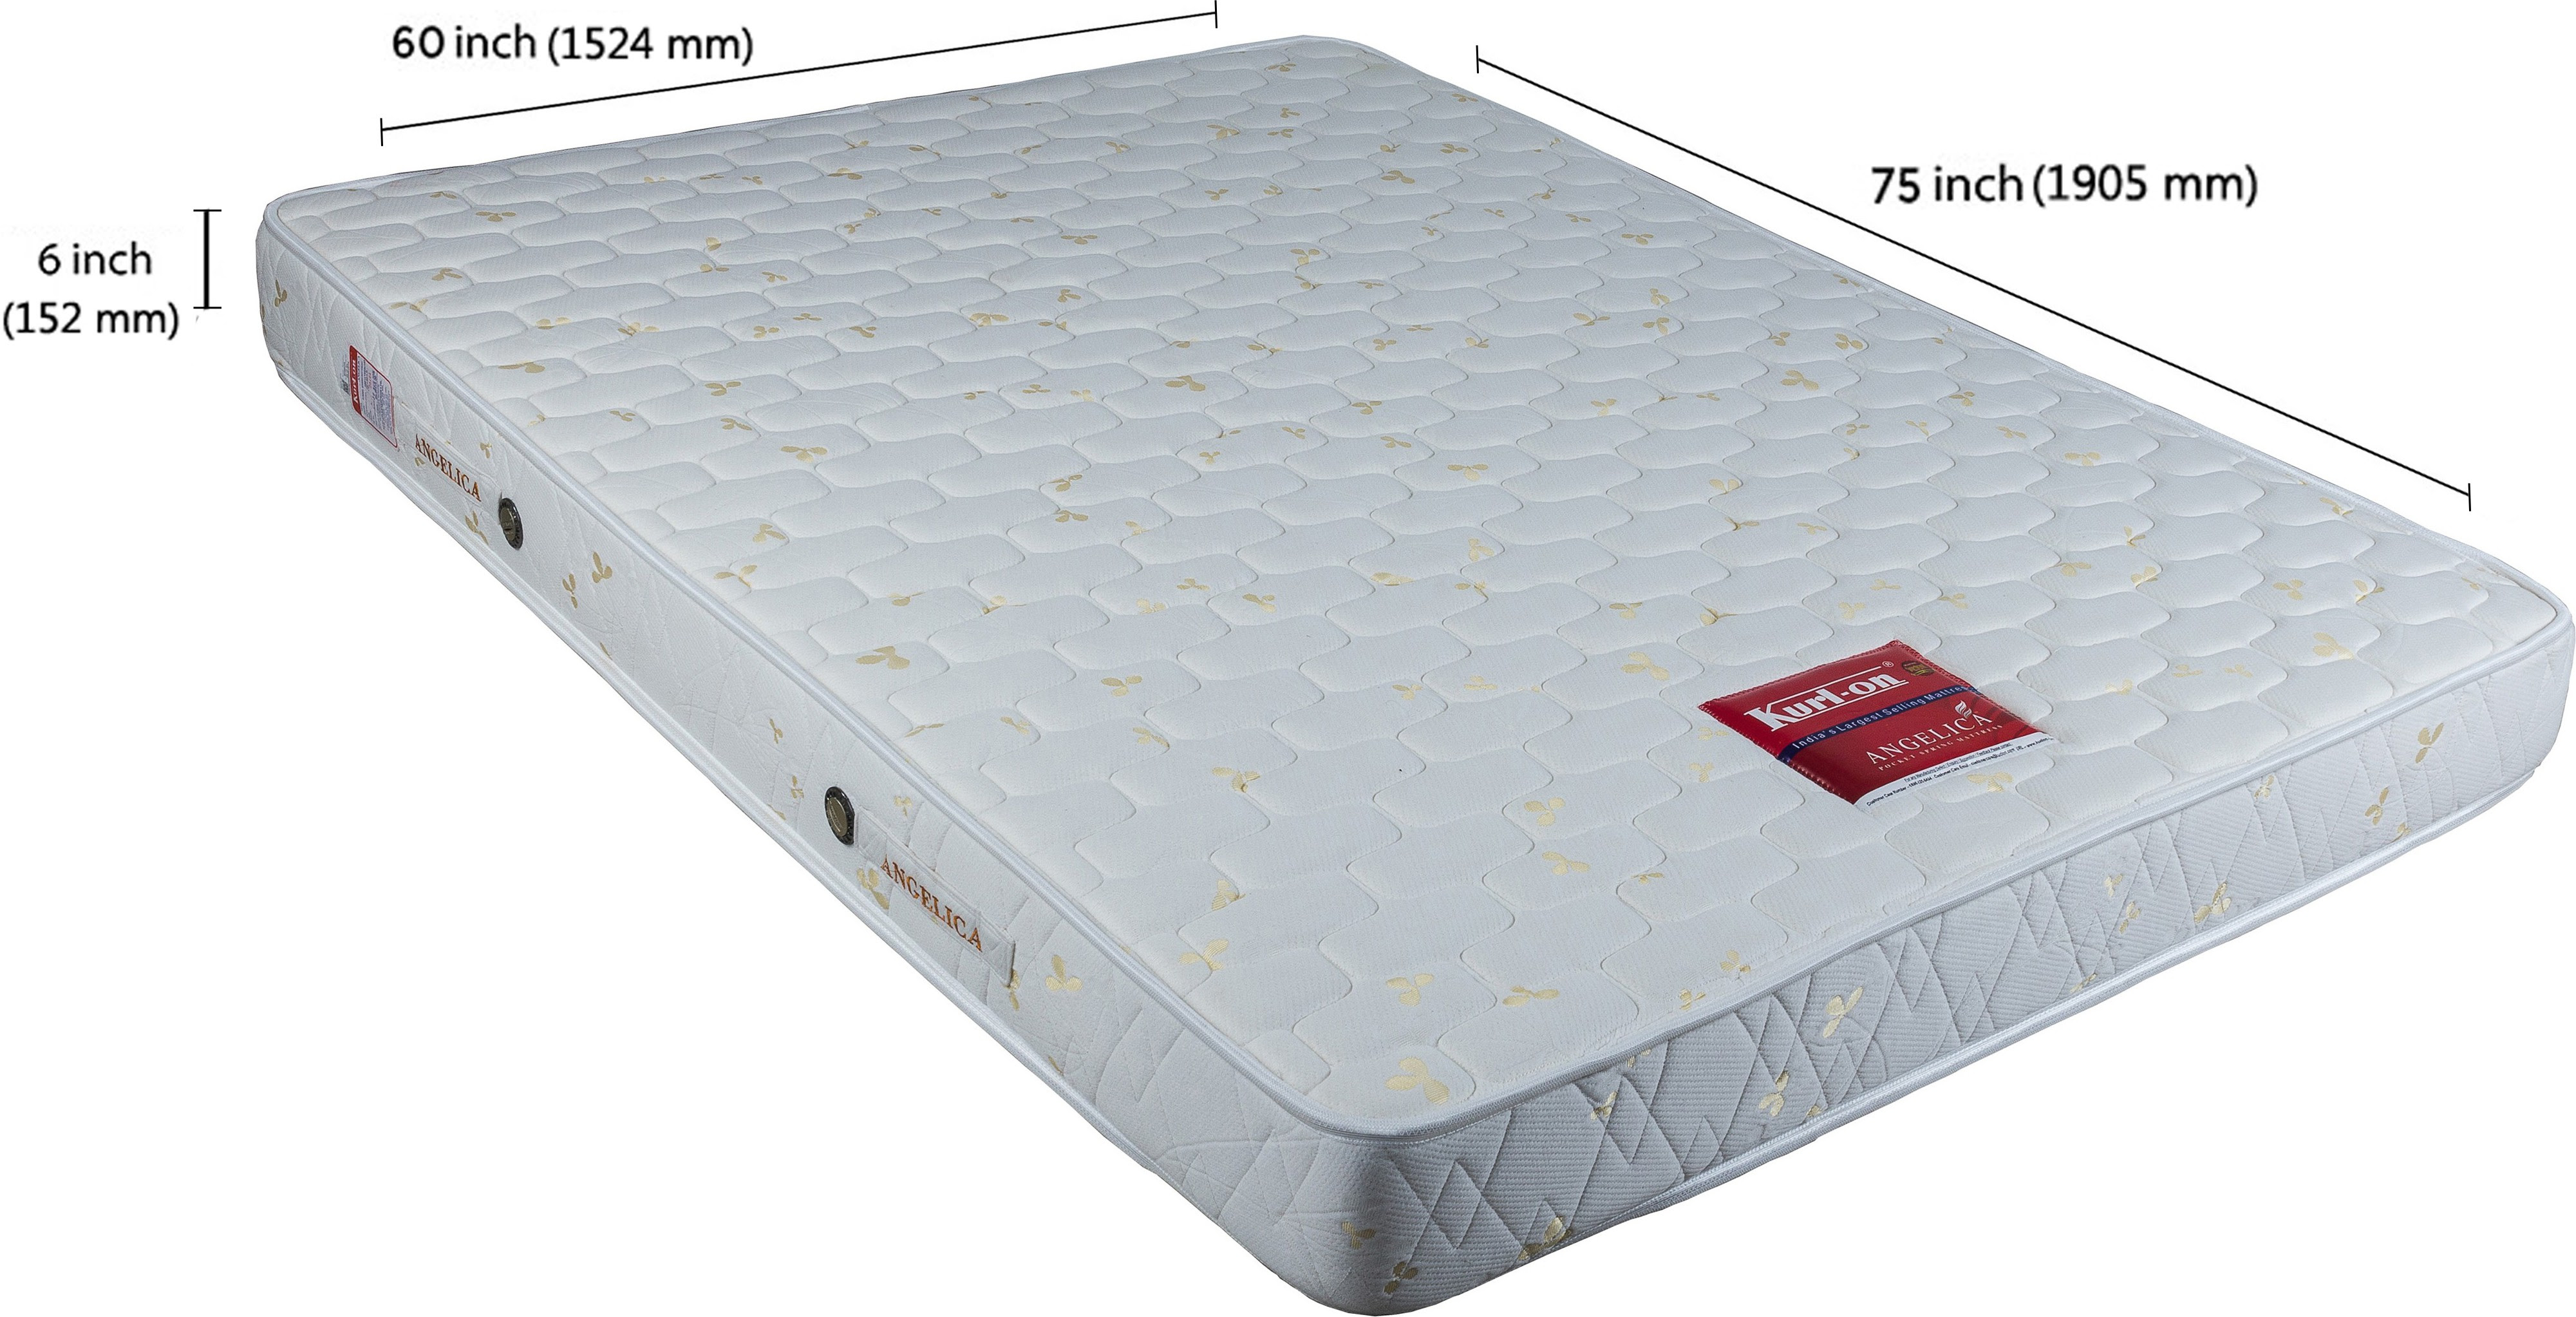 kurlon mattress price list classifieds